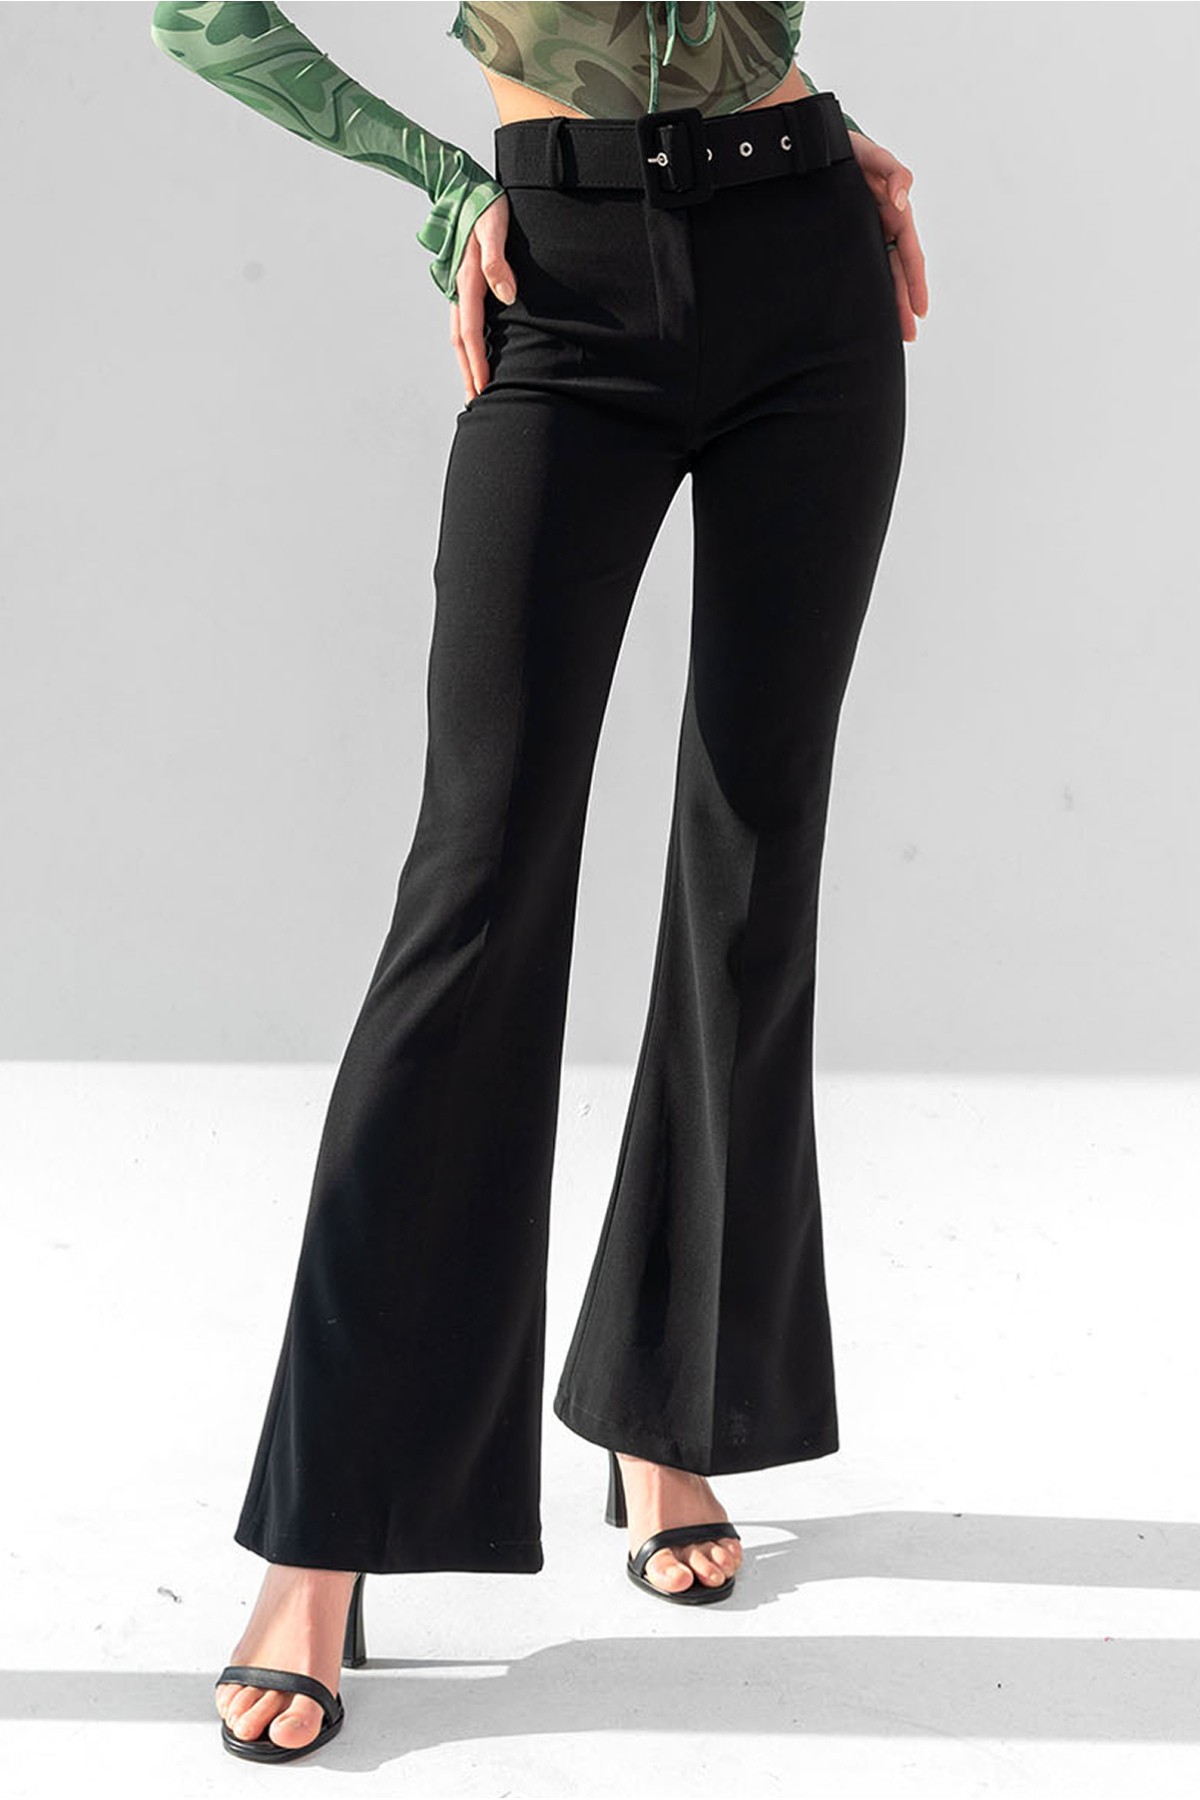 Damen Hose mit hoher Taille und spanischem Schnitt mit Gürtel - Schwarz